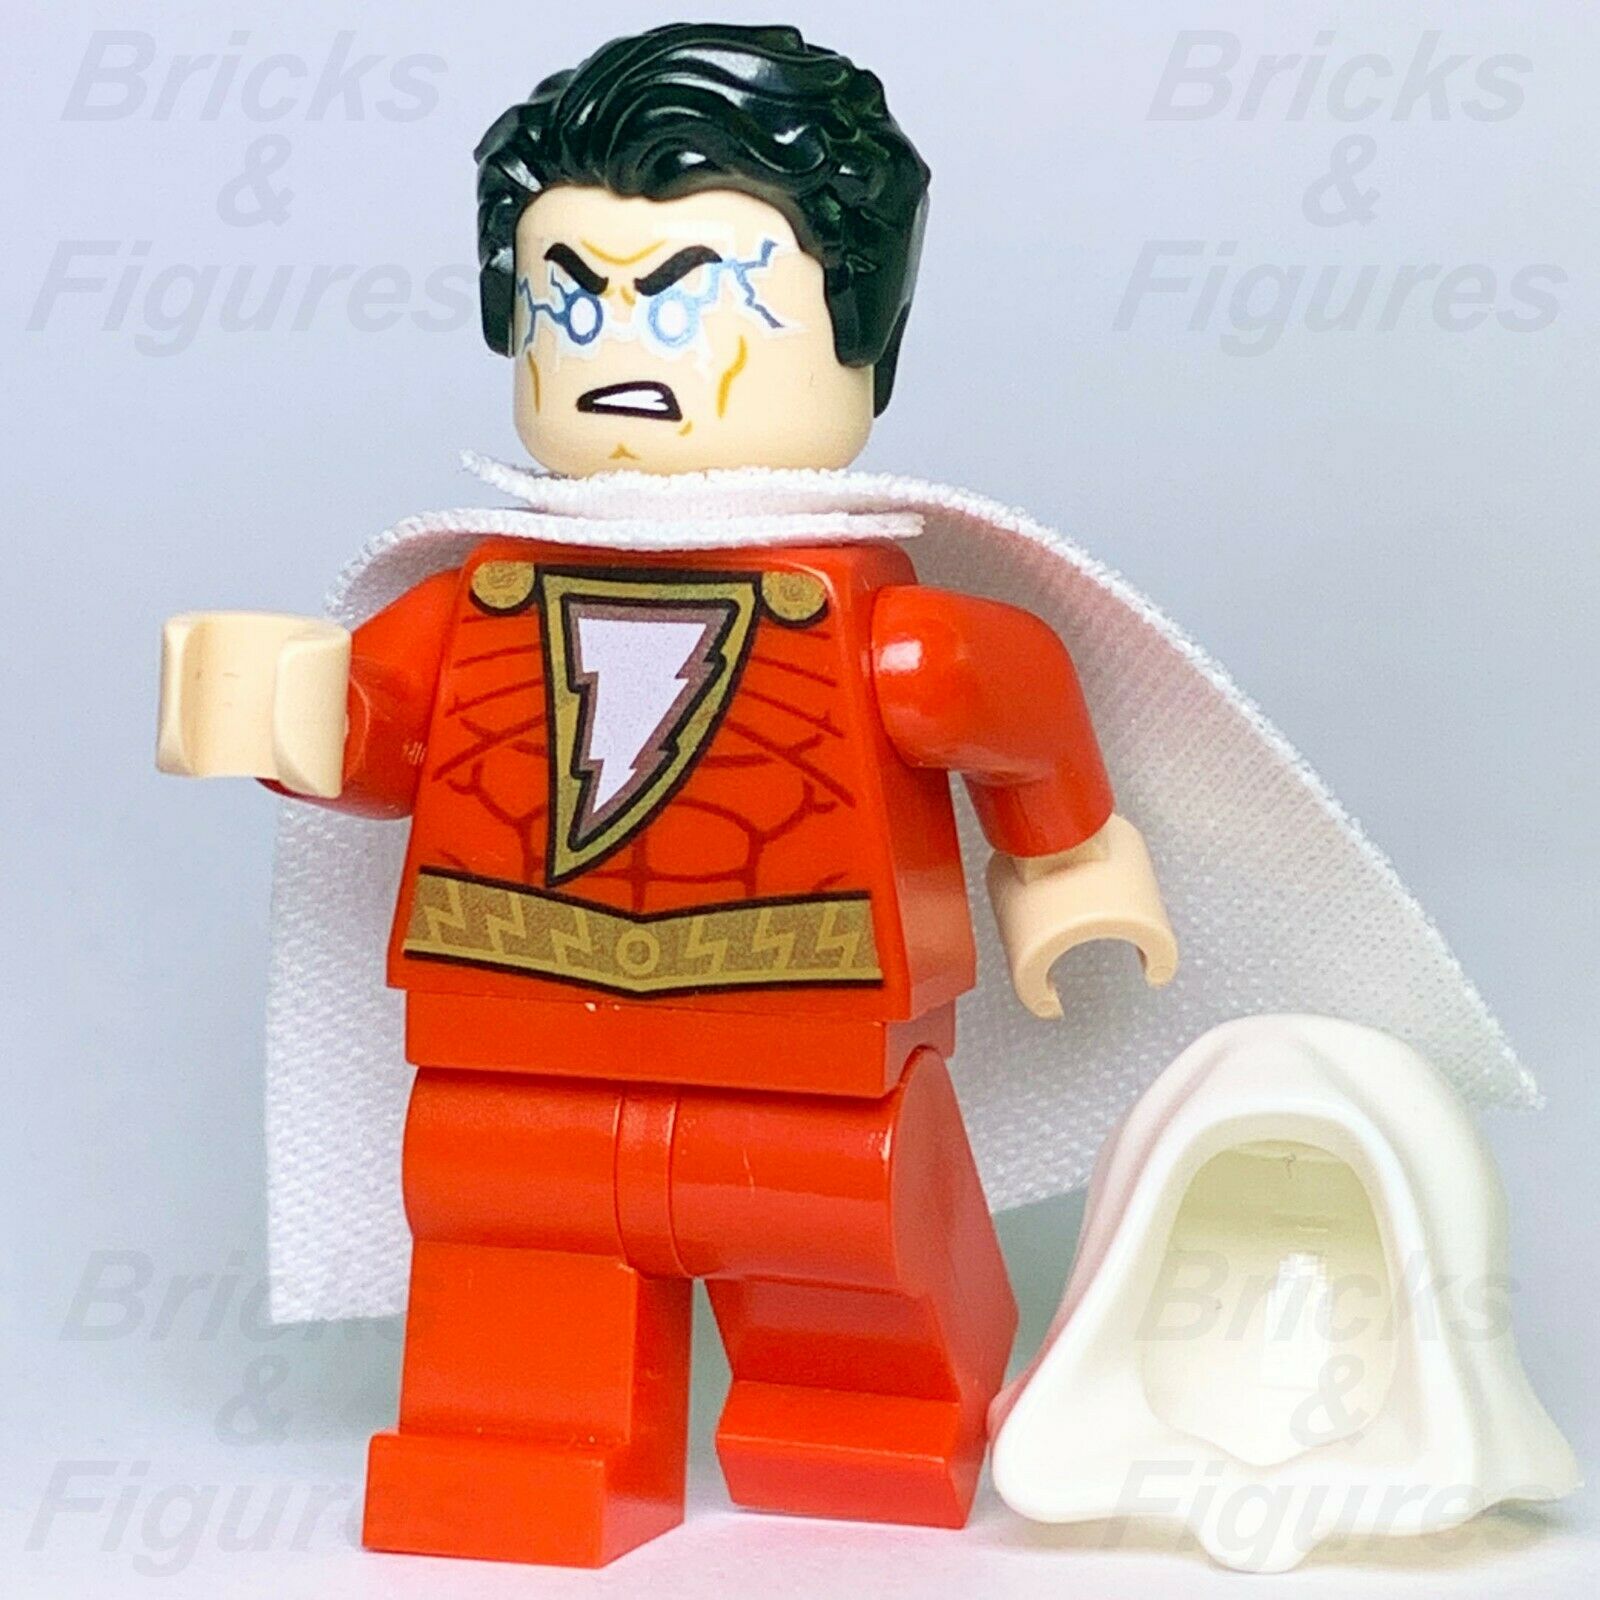 DC Super Heroes LEGO Shazam with Hood Minifigure from 30623 76120 Shazam! - Bricks & Figures